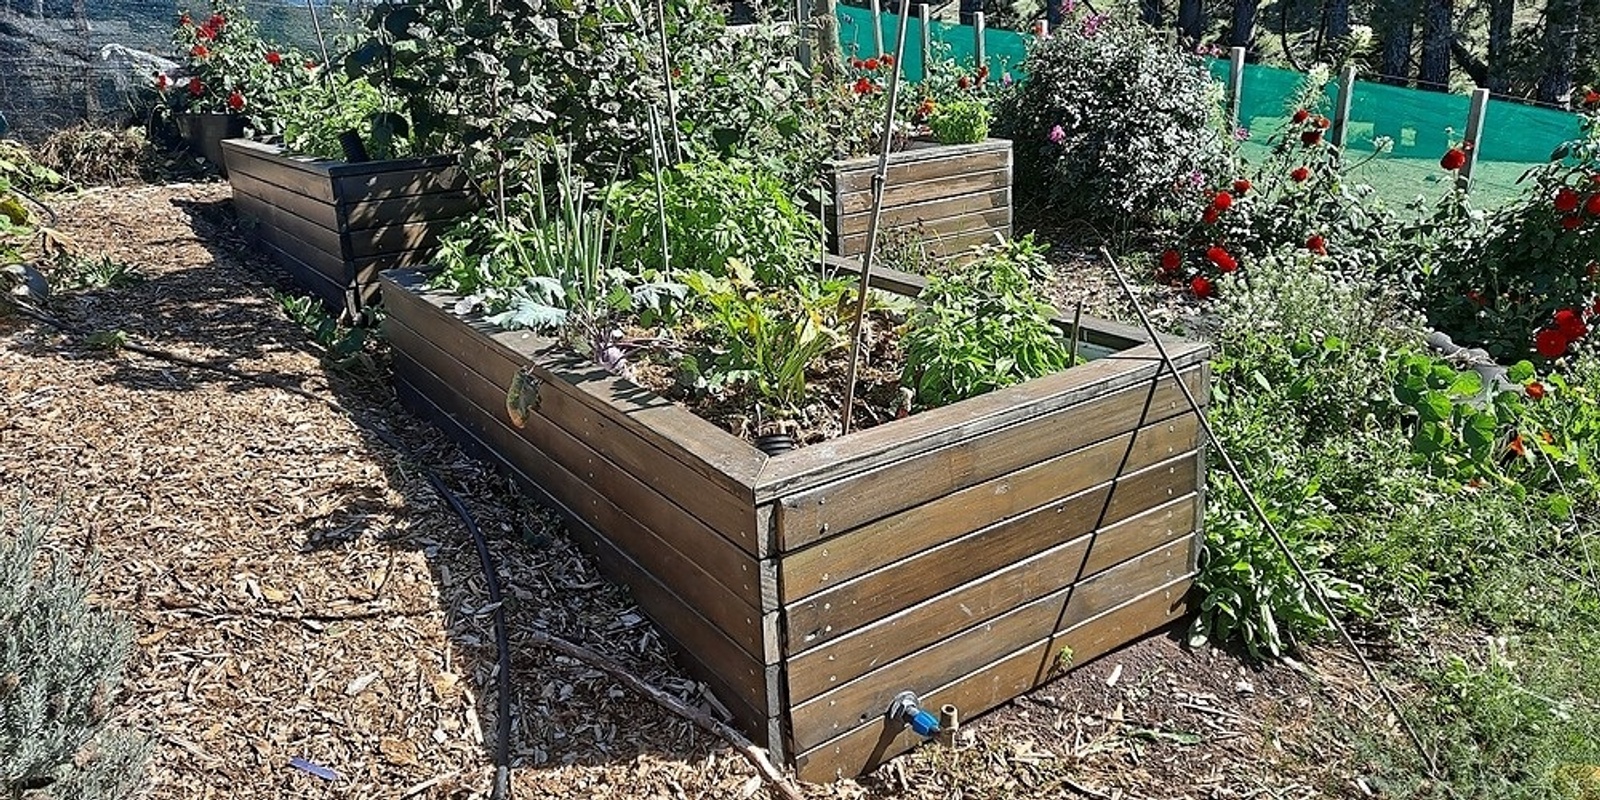 DIY Drought-Tolerant Garden Bed (Wicking Bed) Workshop